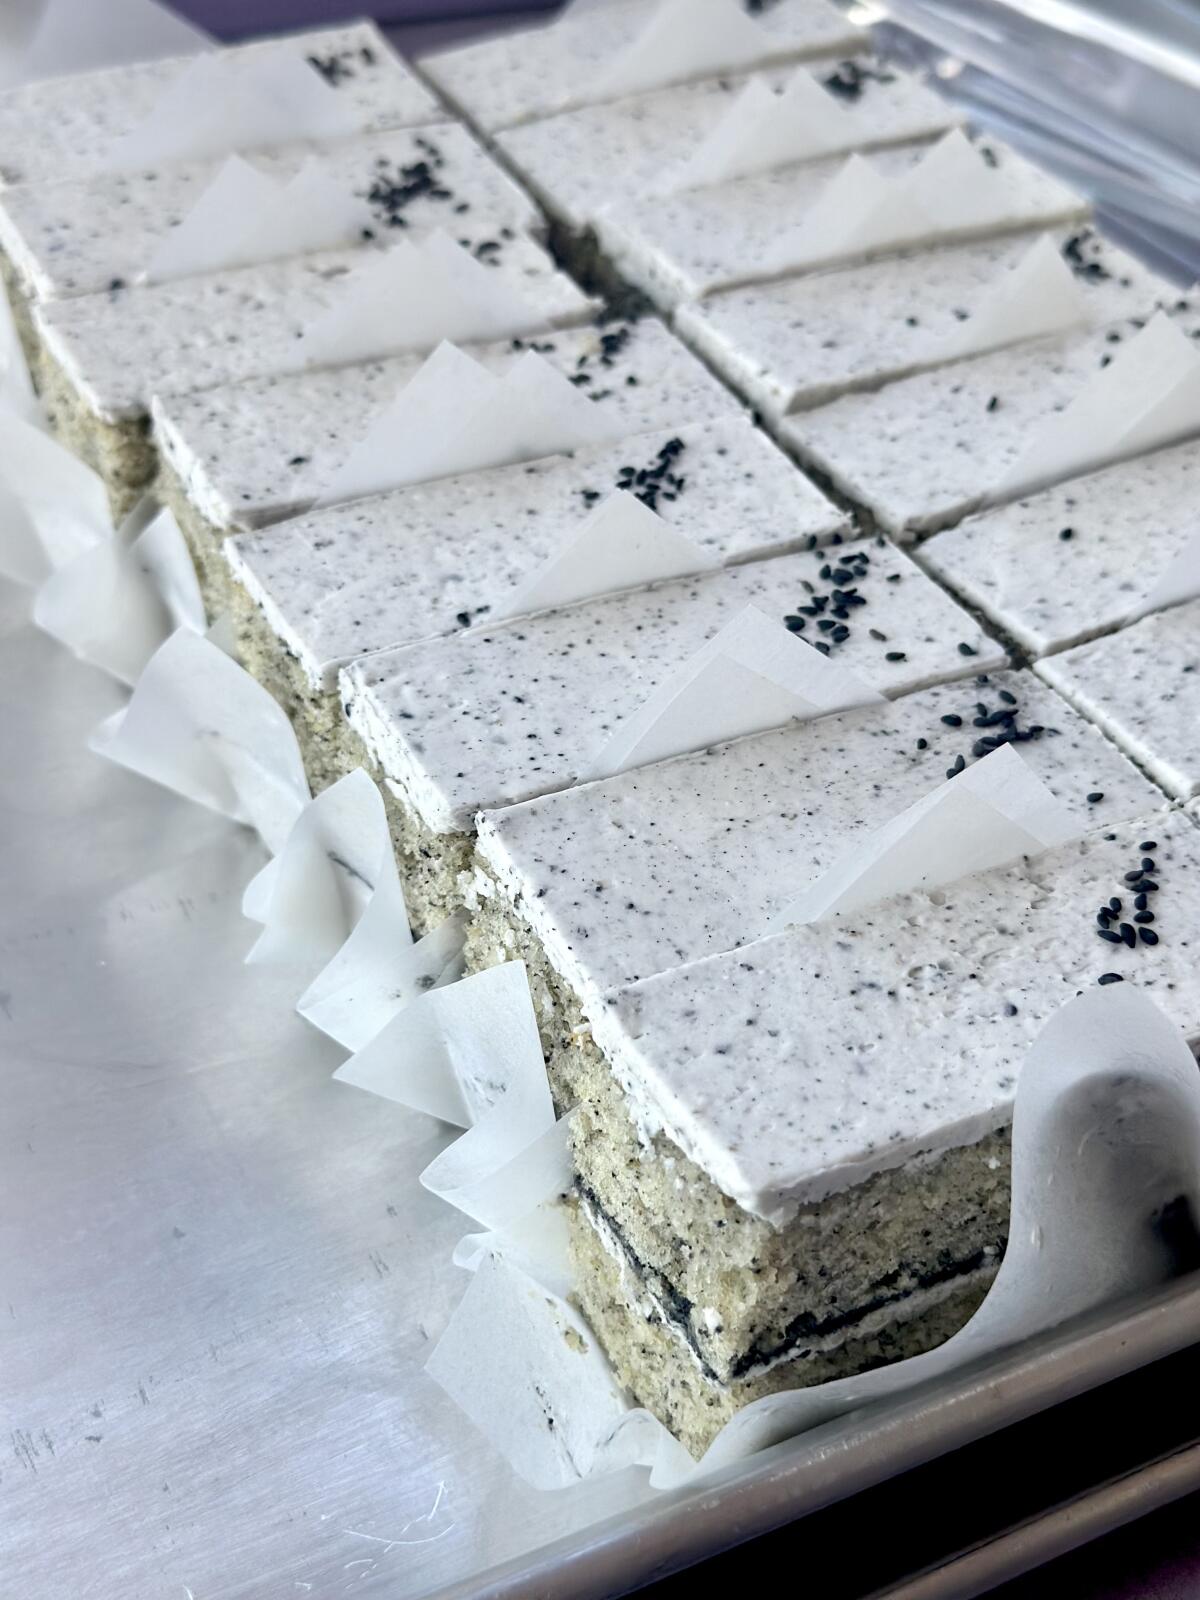 Black sesame cake with white frosting sliced into rectangular bars